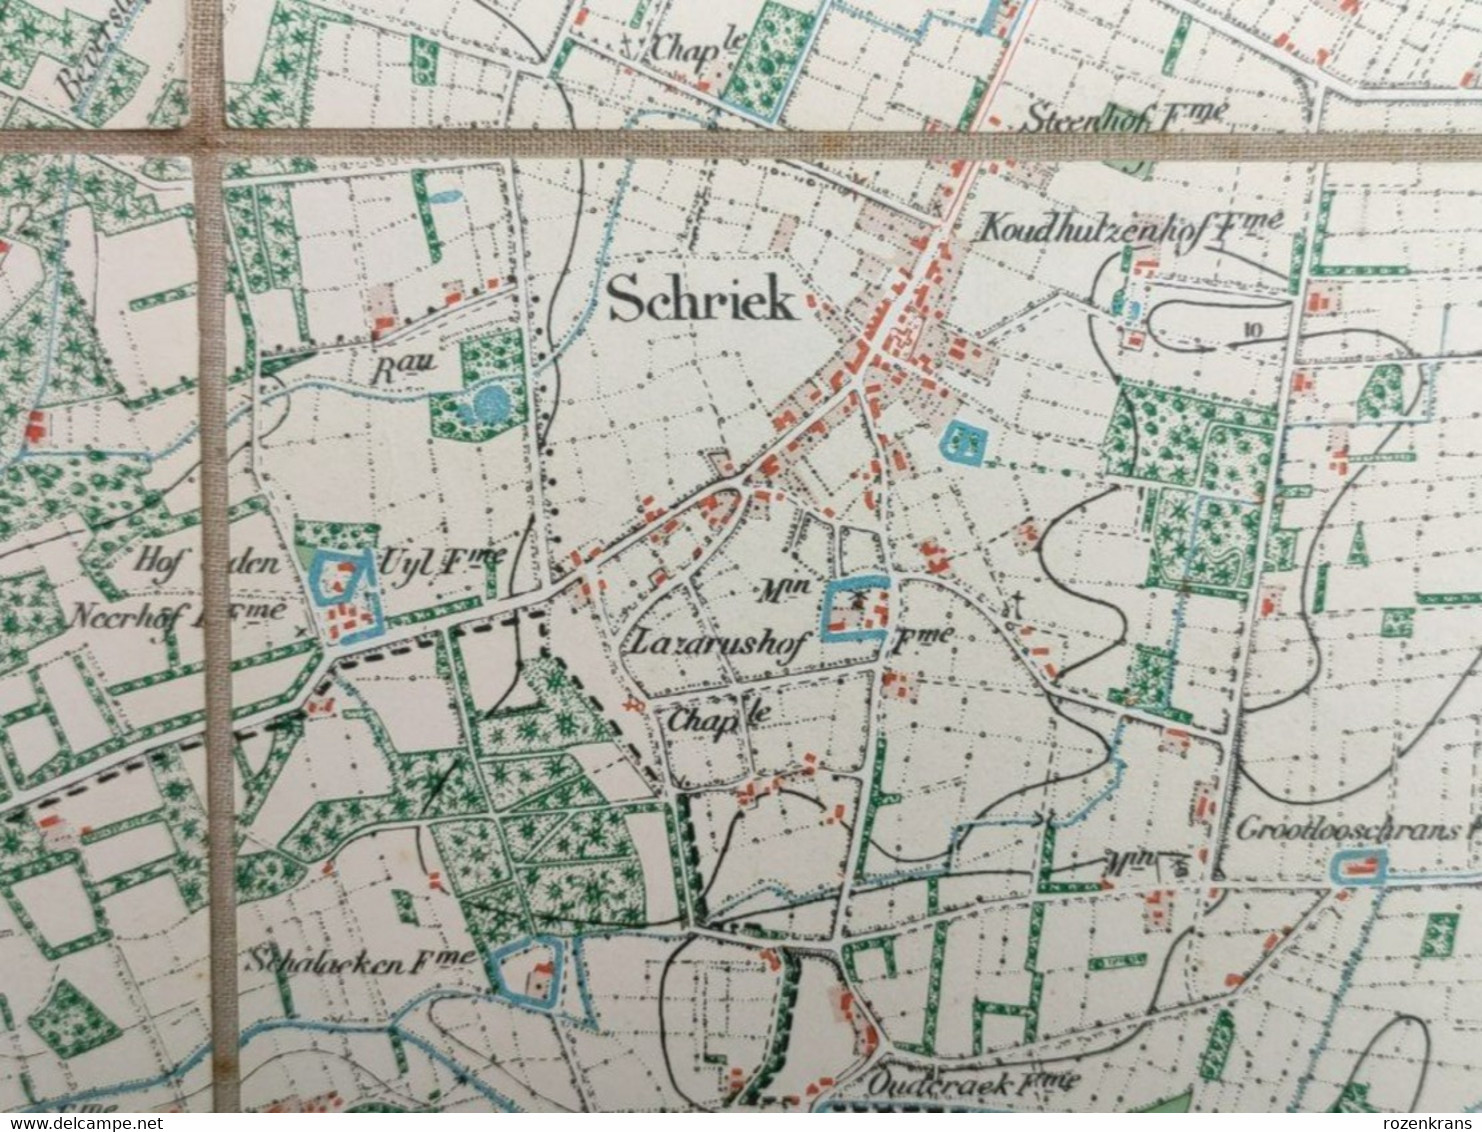 TOPSTUK Oude Topografische & Militaire Kaart 1869 STAFKAART Heist Op Den Berg Schriek Beersel Beerselberg Hallaar Werft - Topographische Karten